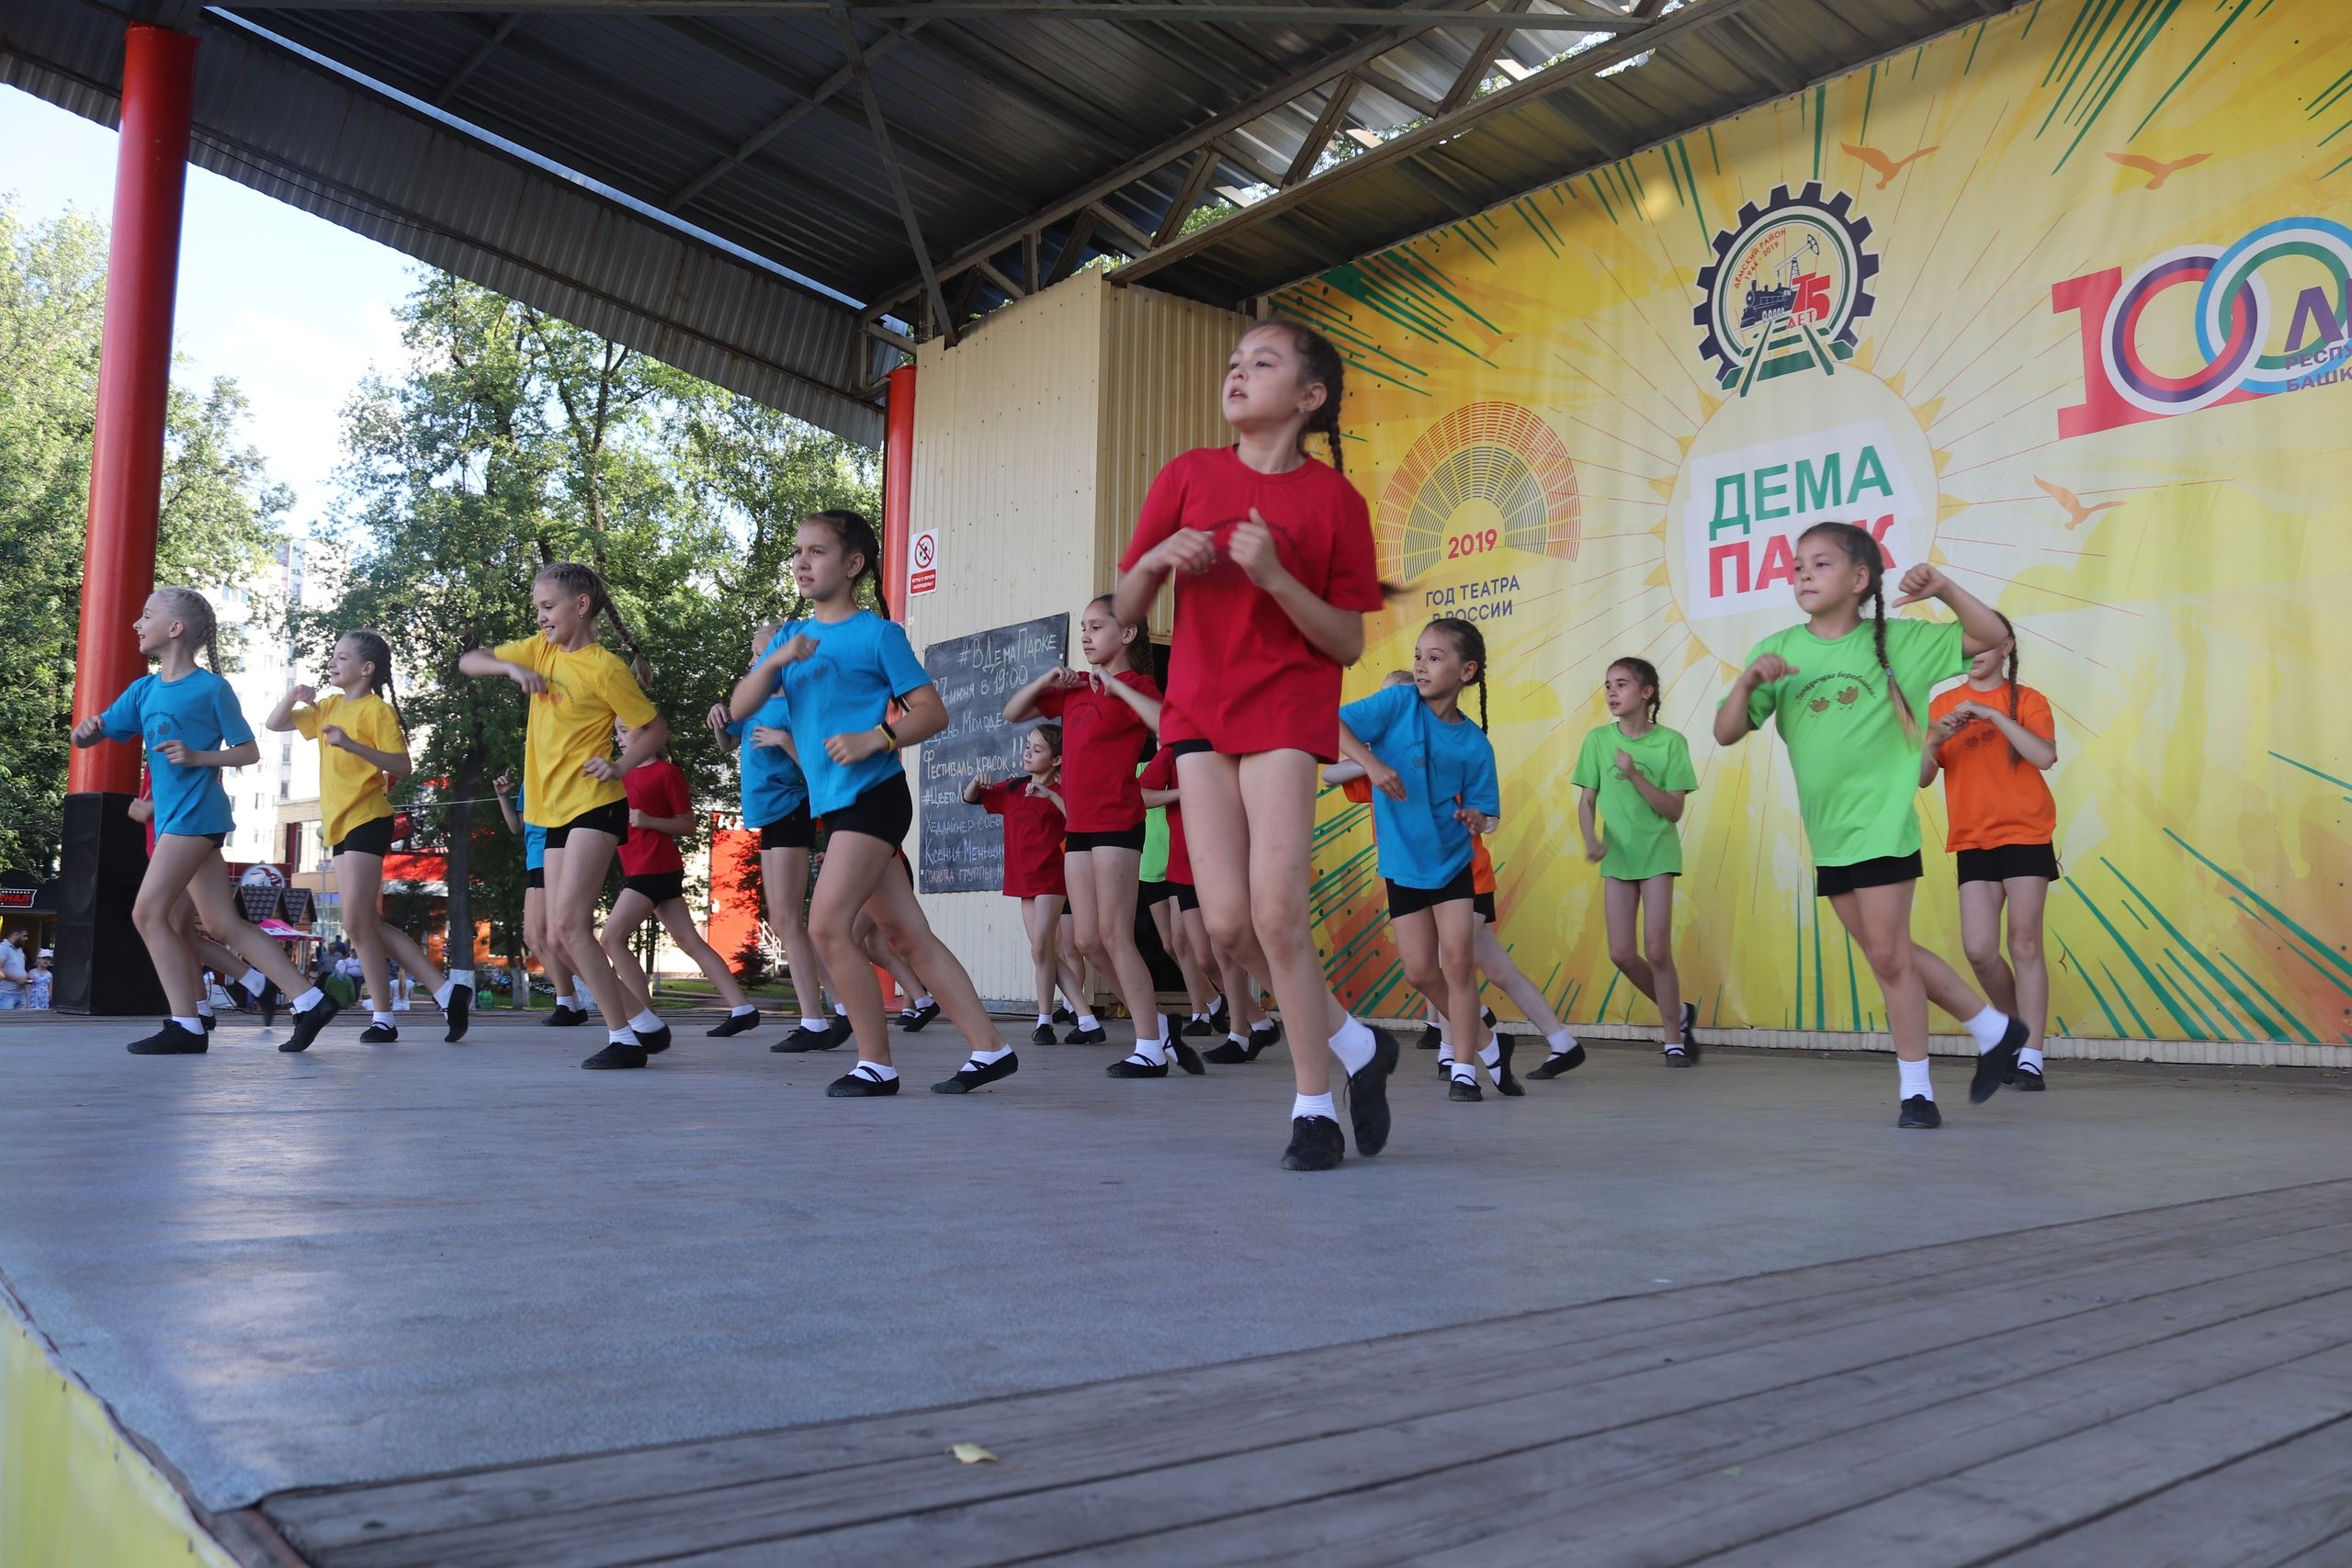 Вчера, 9 июля, в парке культуры и отдыха «Демский» прошла веселая детская развлекательная танцевальная программа «Танцующие воробушки»